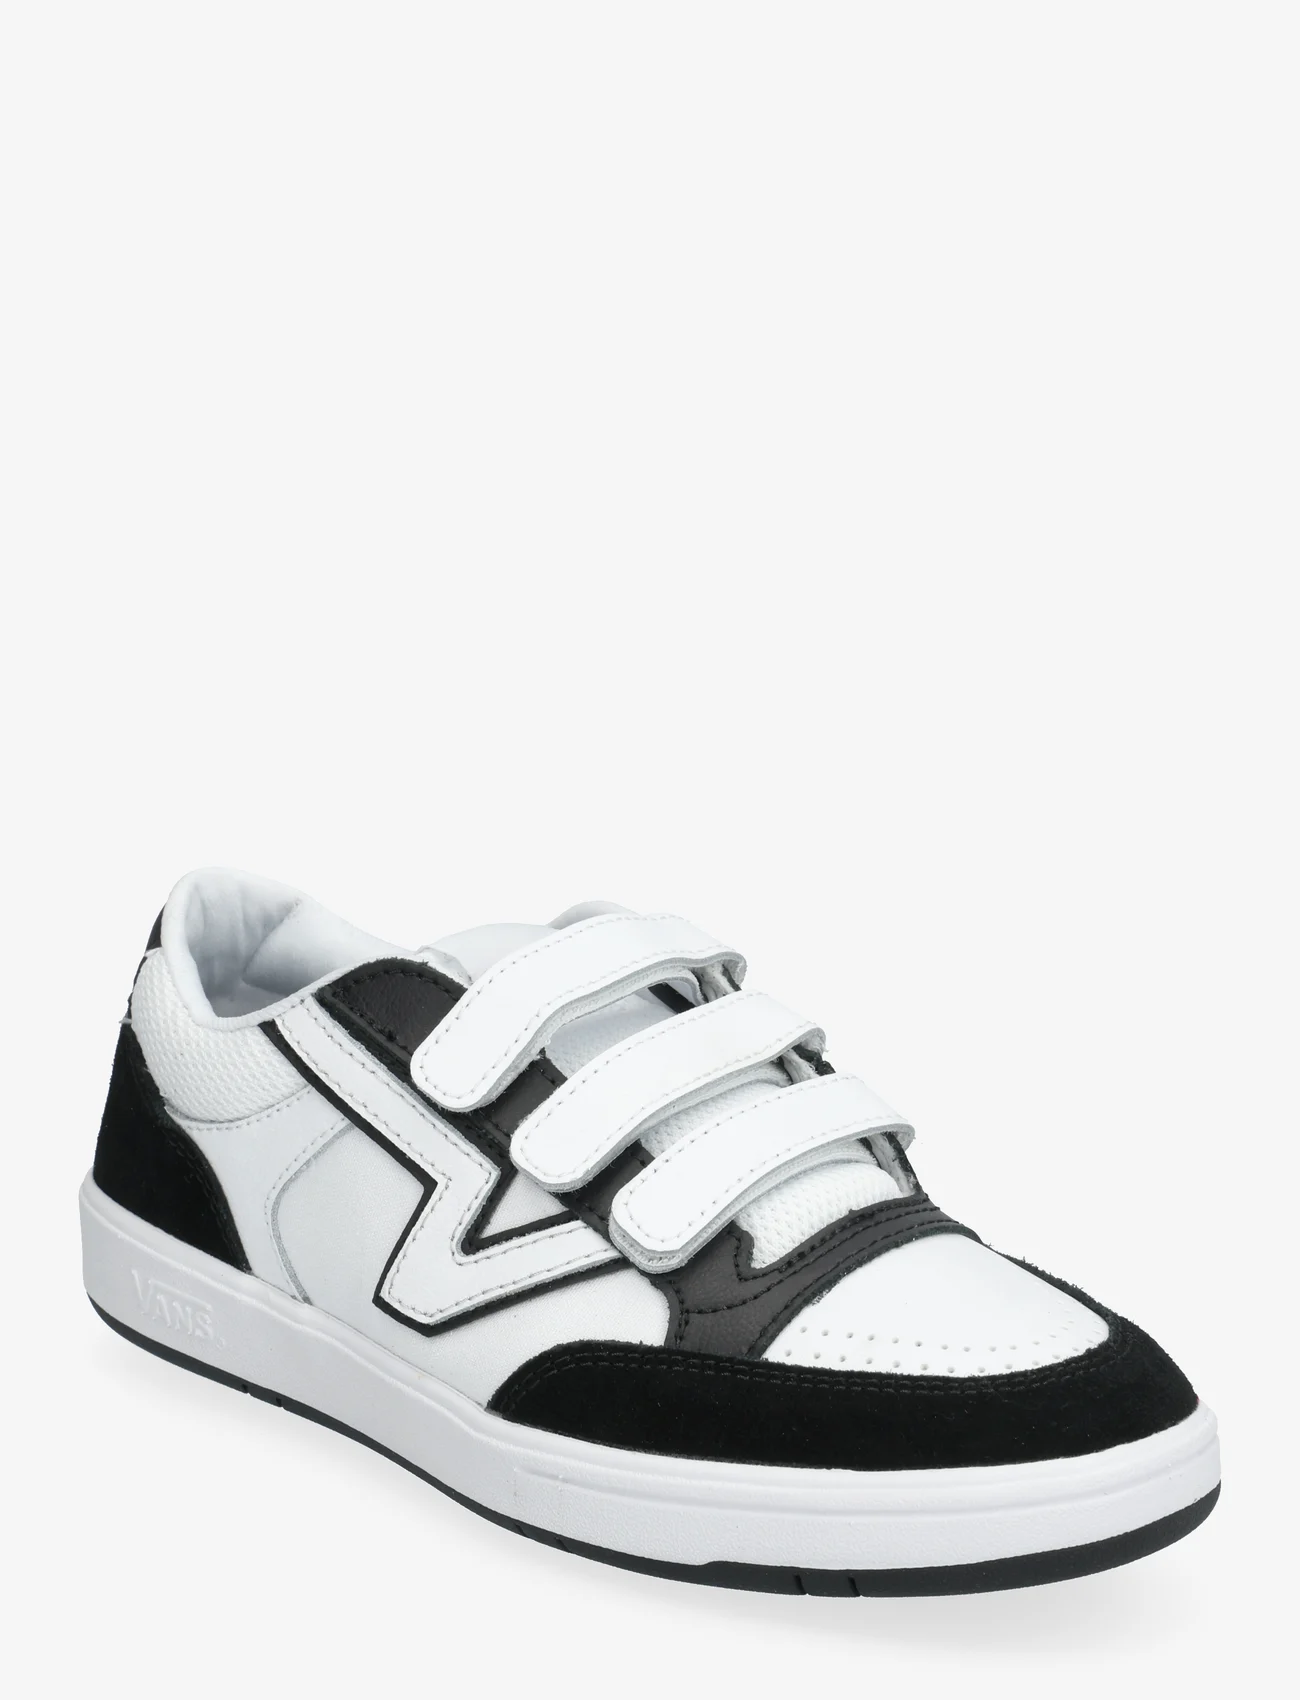 VANS - Lowland CC V - sneakers - black/true white - 0